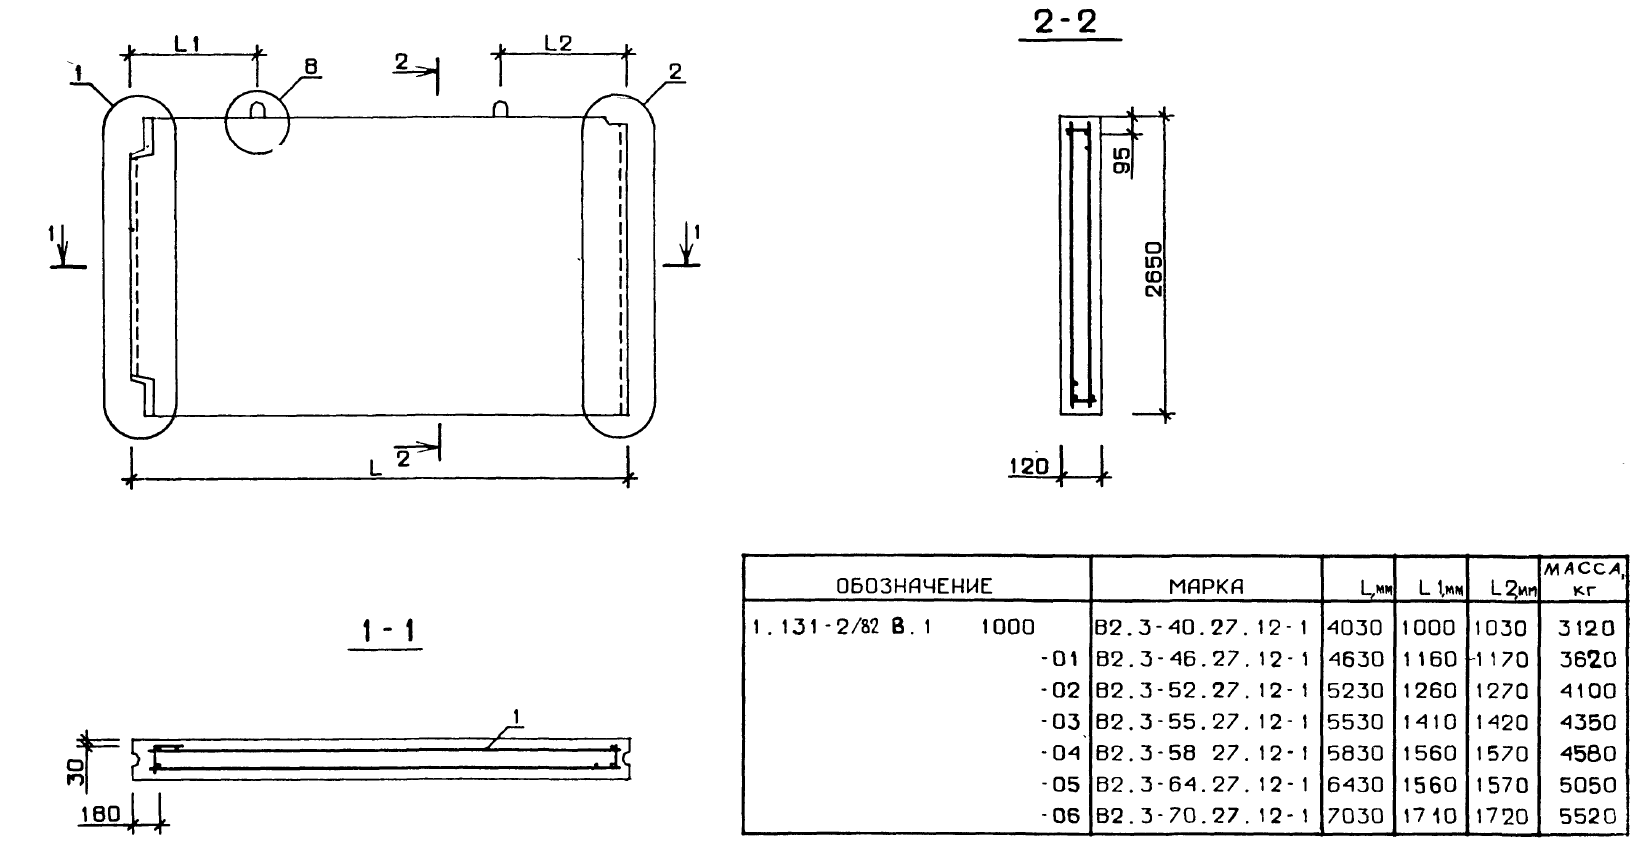 Внутренняя поперечная стеновая панель В2.3-55.27.12-1 серия 1.131-2/82